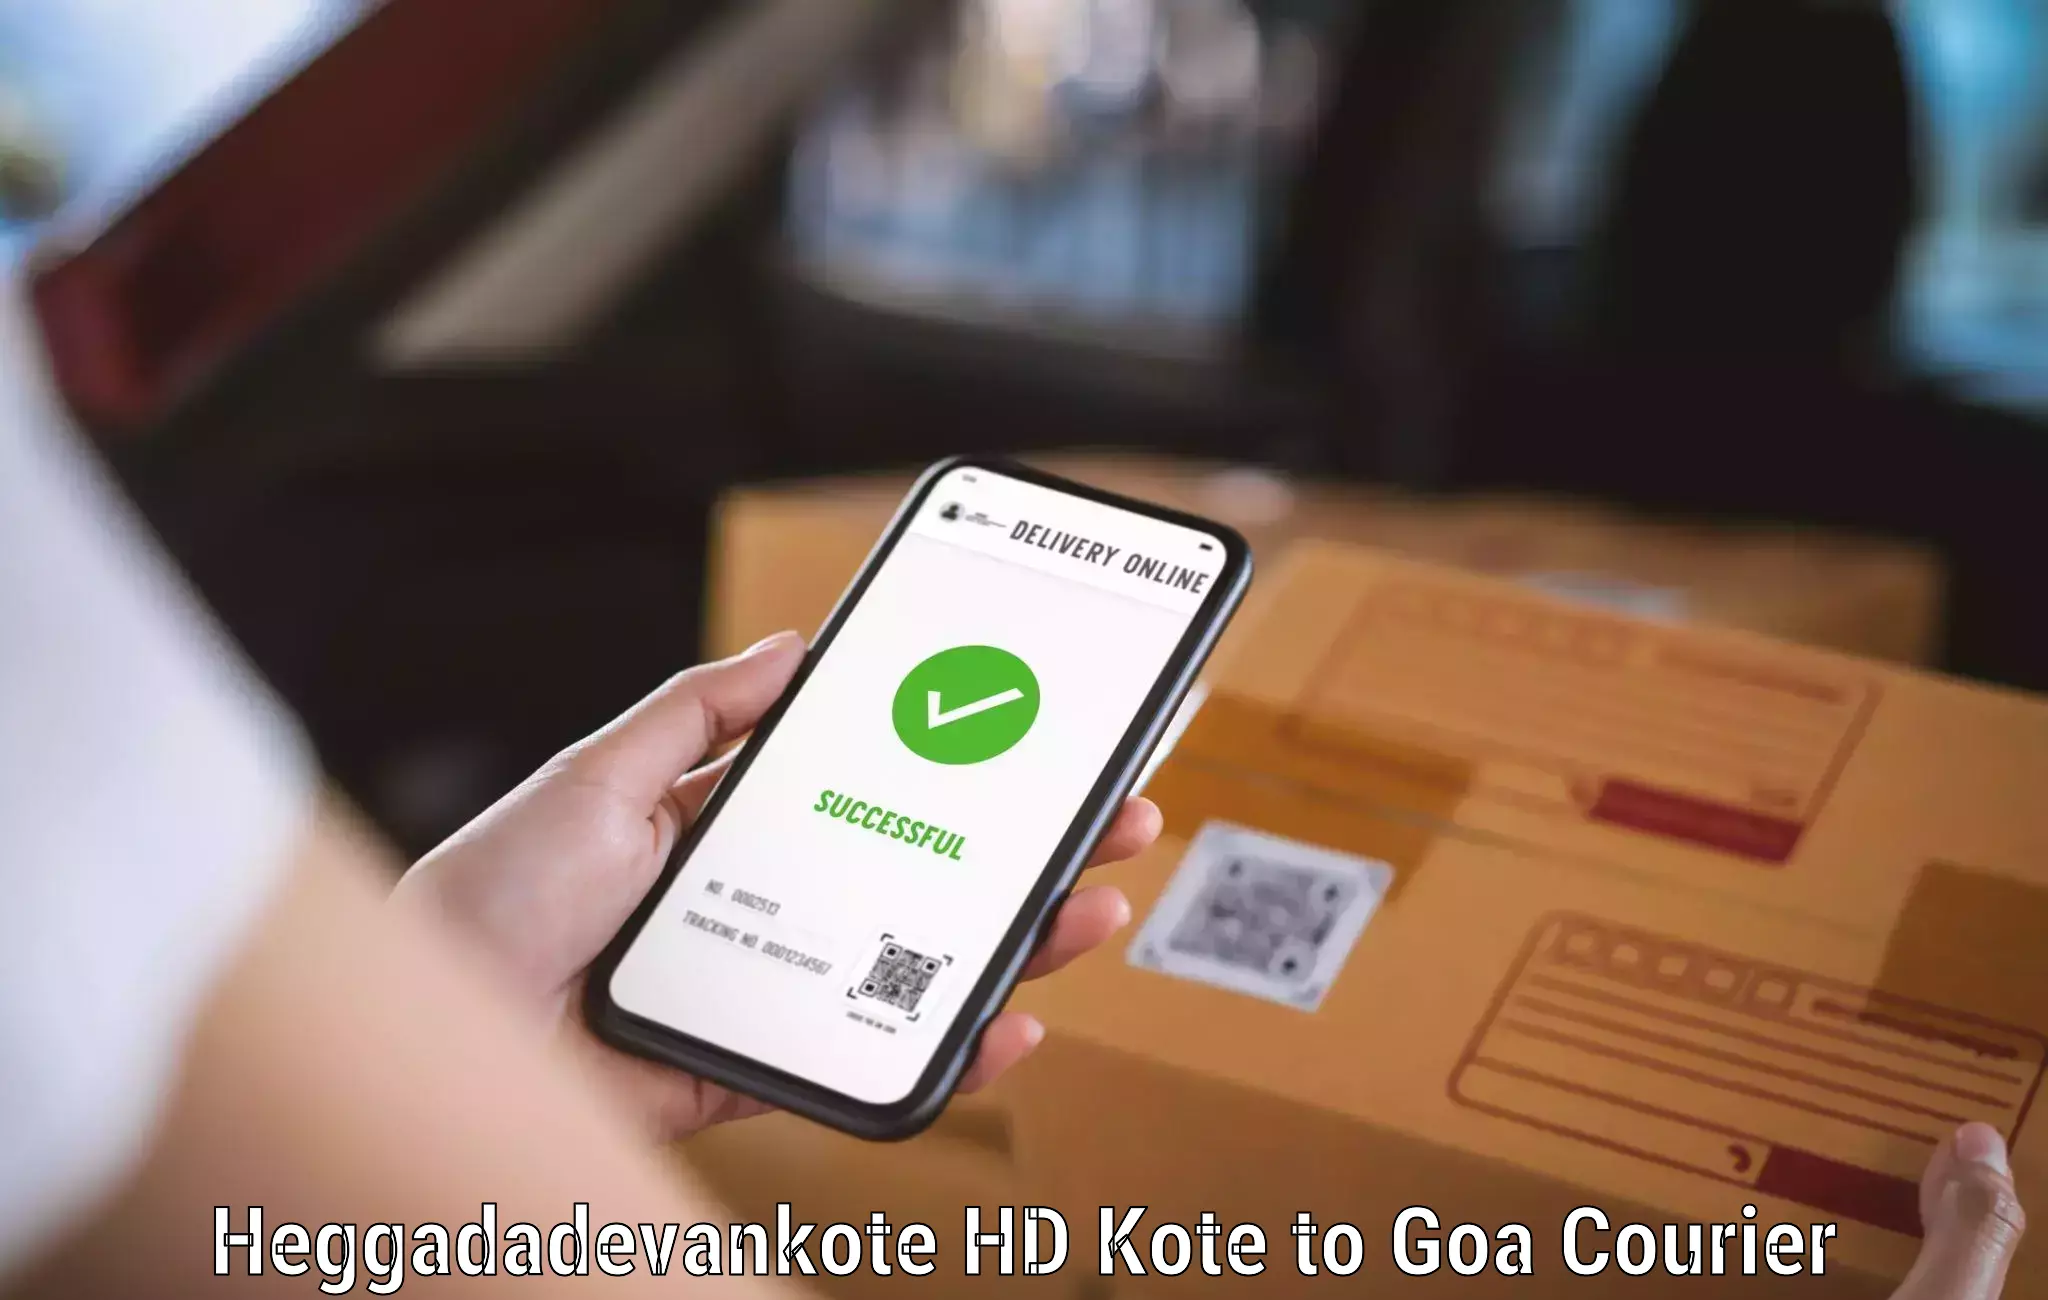 High-speed logistics services Heggadadevankote HD Kote to NIT Goa